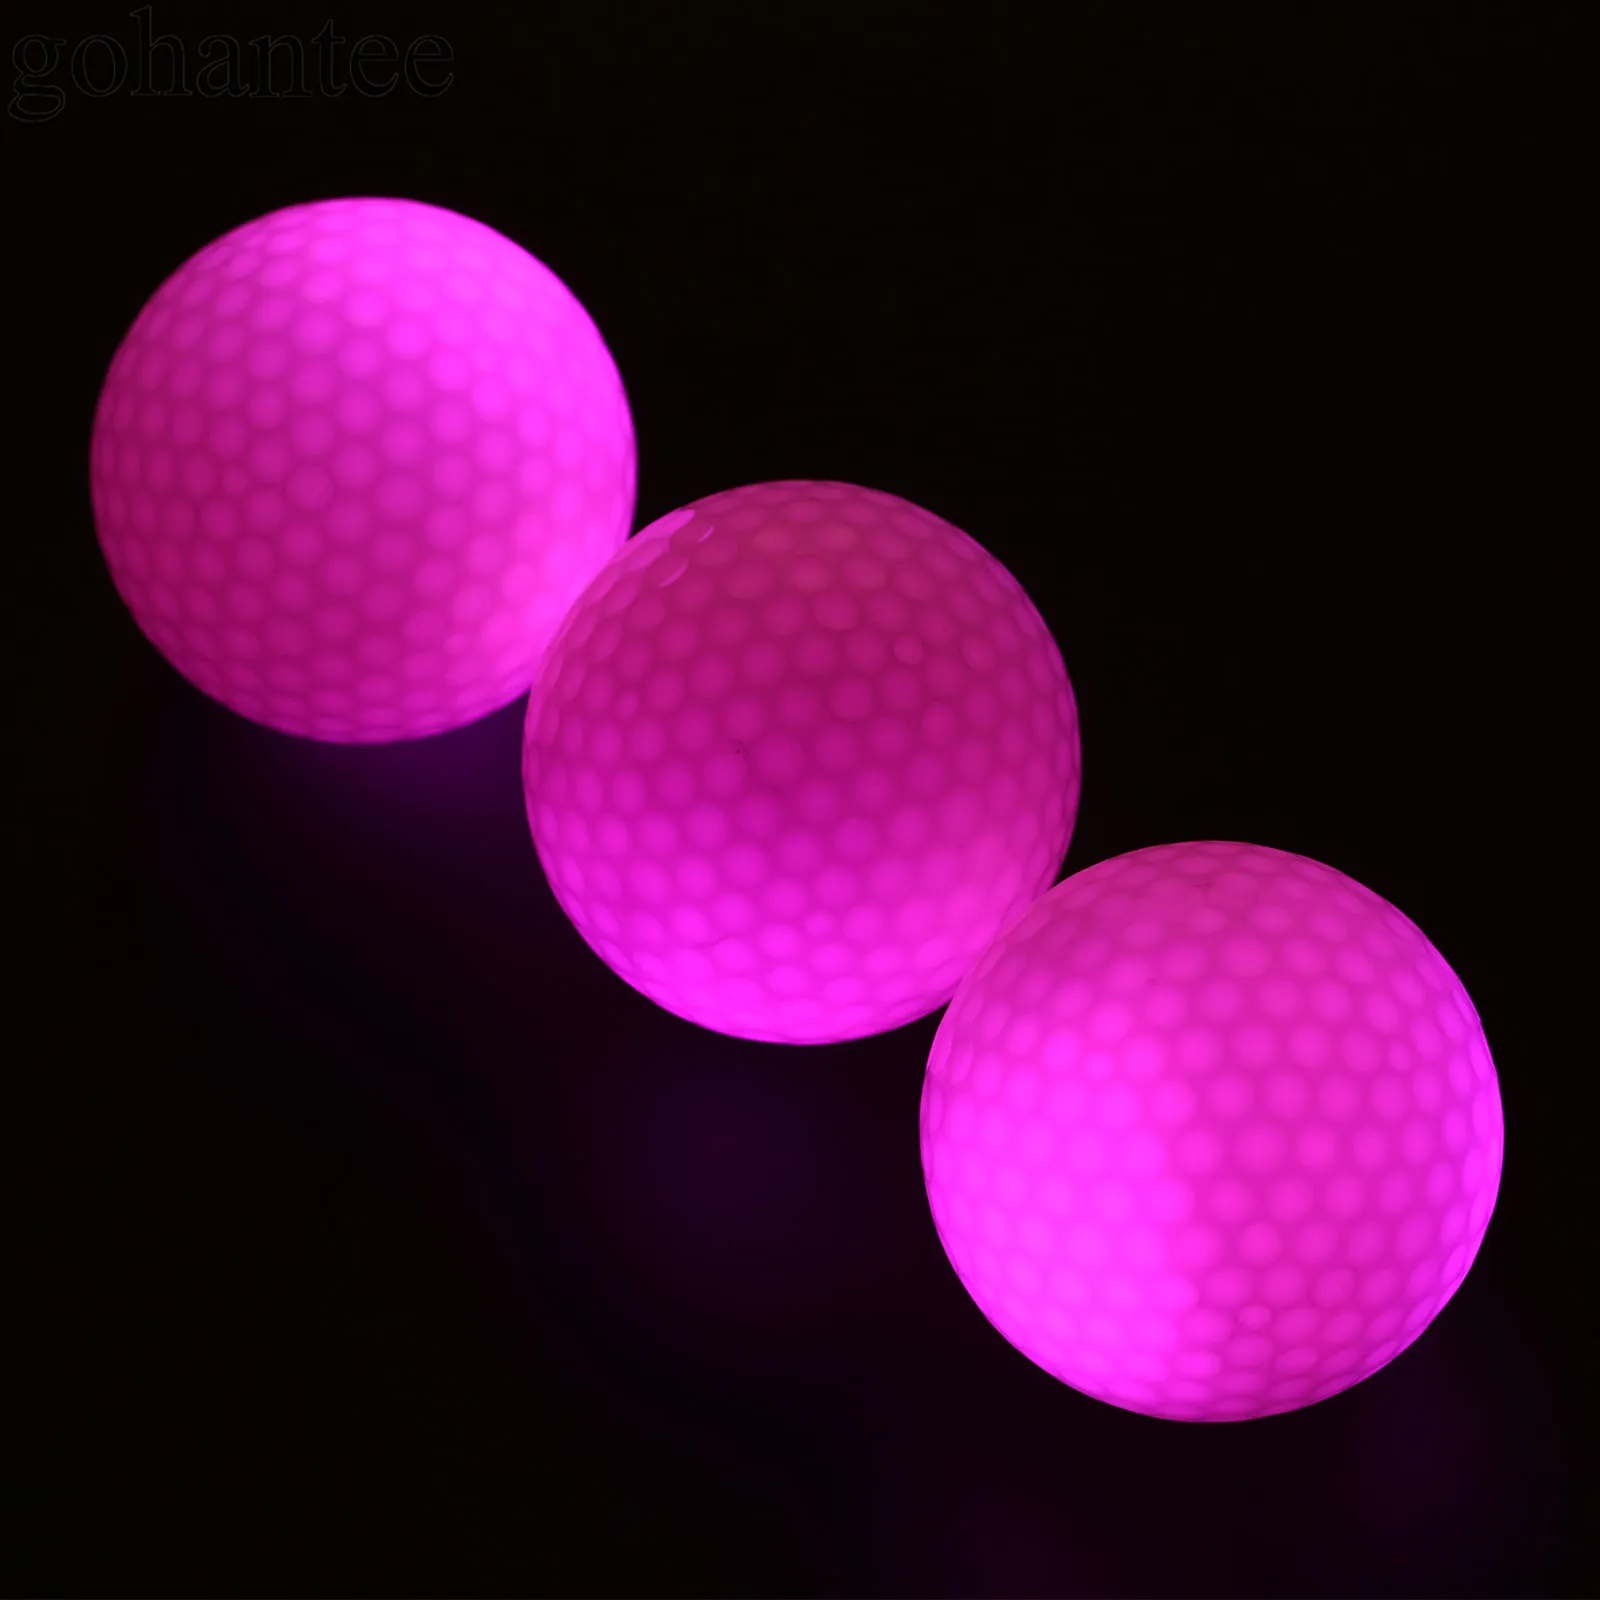 Gohantee 6 шт. светодиодный мячи для гольфа с коробкой для ночного обучения мячи для гольфа 42,6 мм Dia Surlyn мячи для гольфа 6 цветов Balle De подарок для гольфа - Цвет: Pink